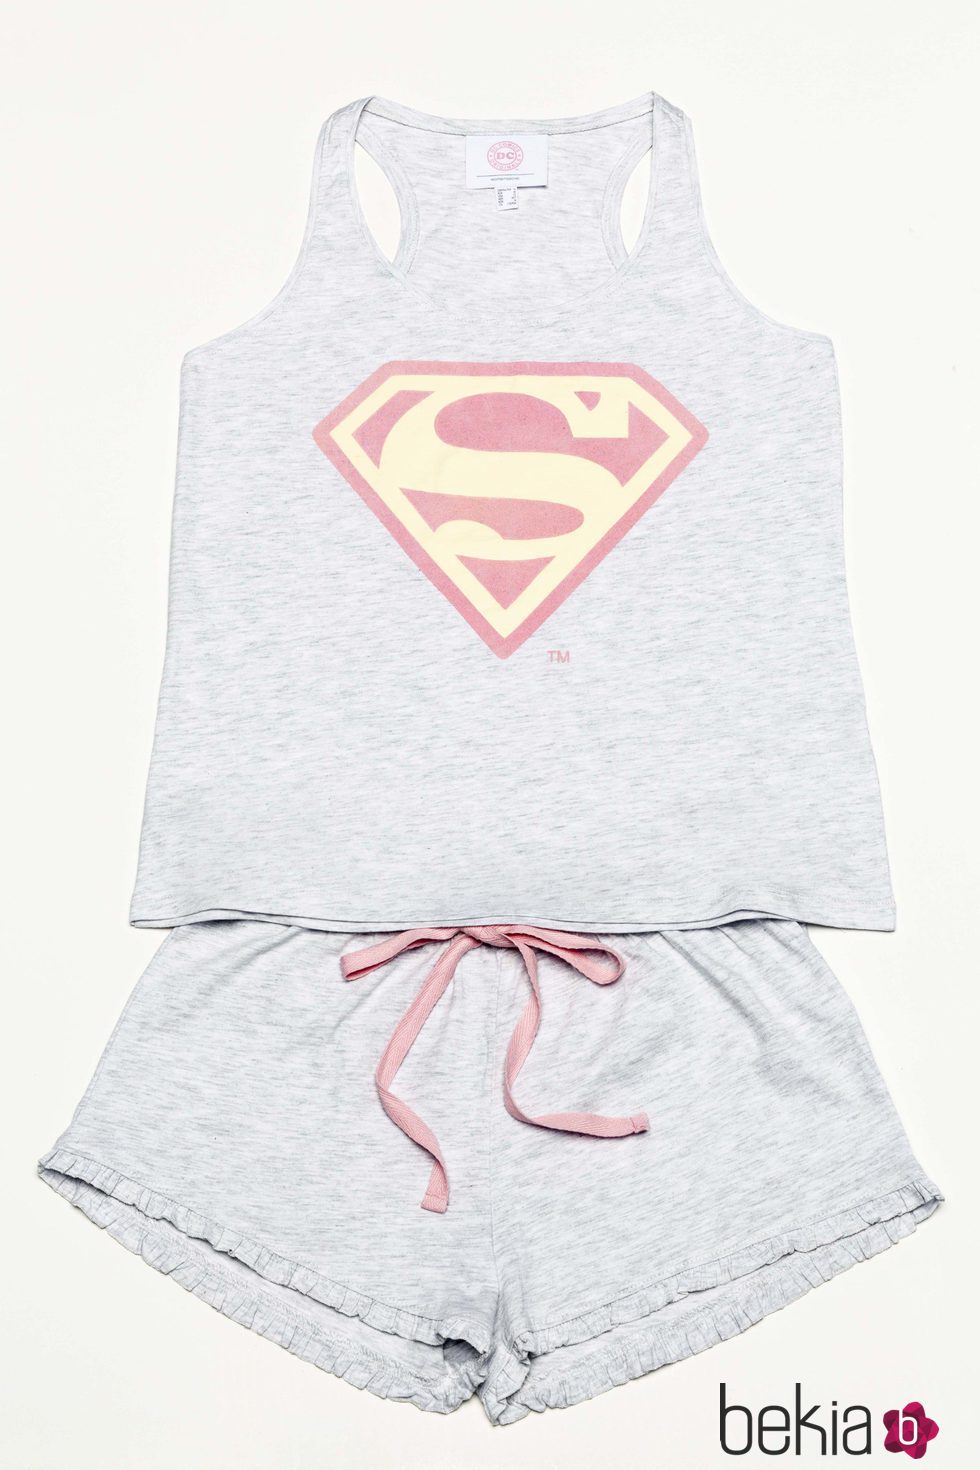 pijama con insignia de 'Superman' en rosa para la nueva colección 'Woder woman' de Women'secret